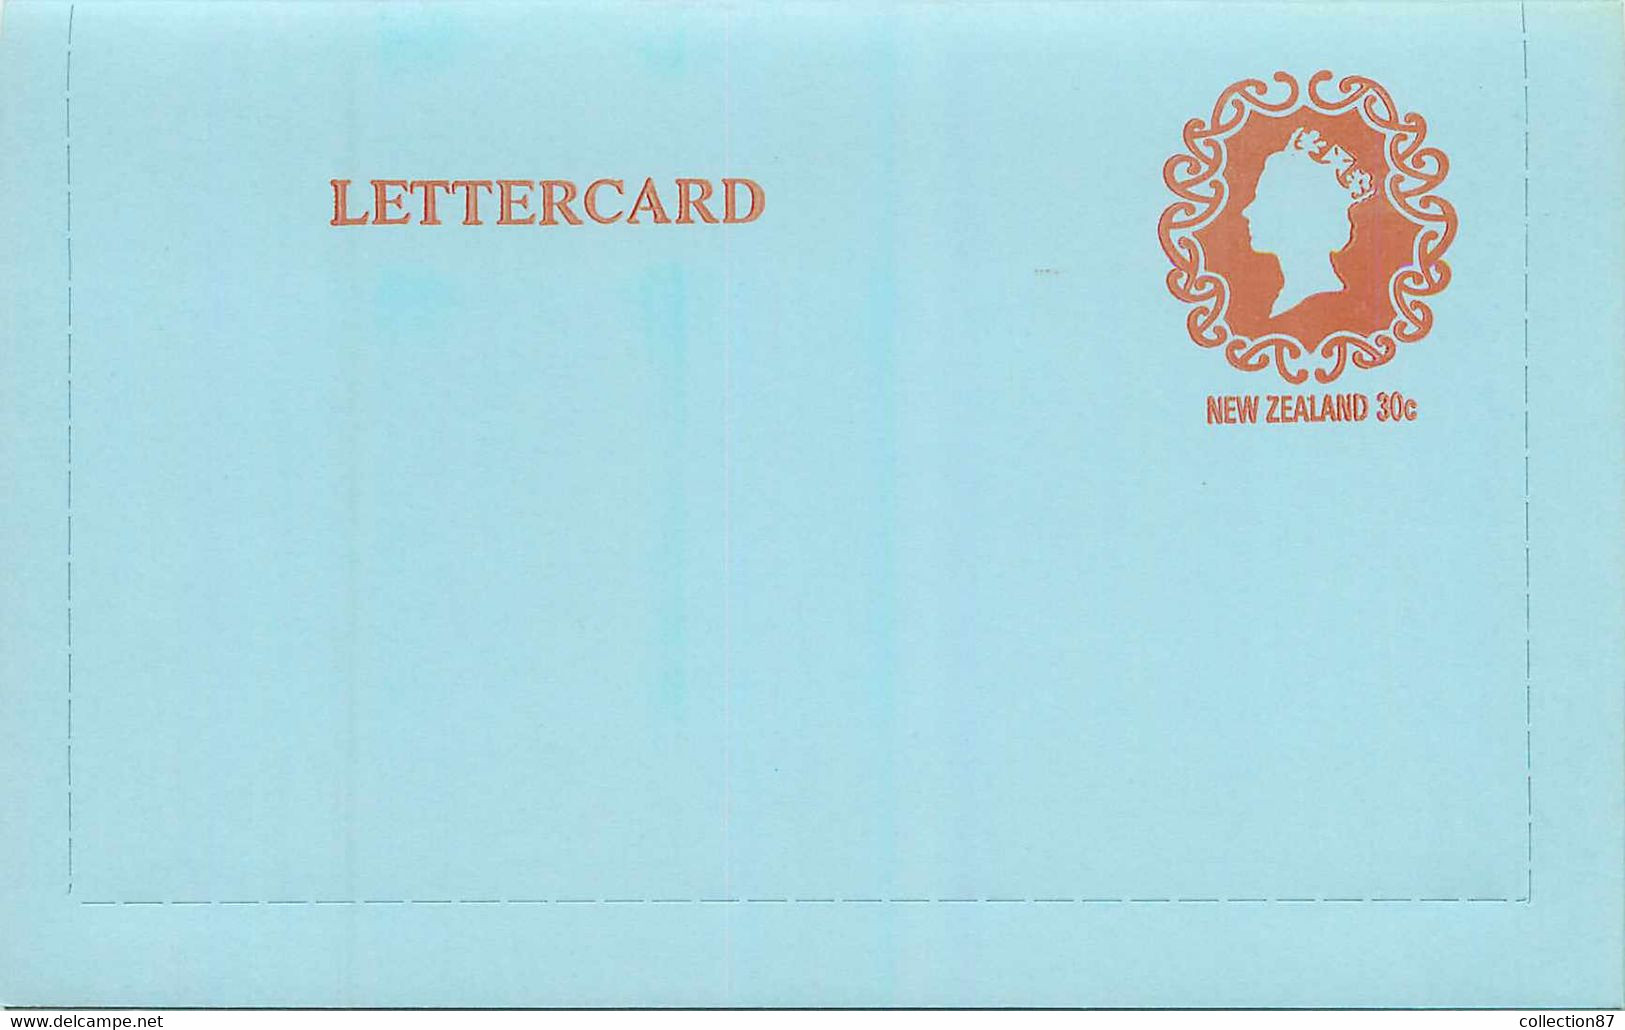 NEW ZEALAND - LETTERCARD 30c Postage Paid < ENTIER POSTAL NOUVELLE ZELANDE 30 Cent - QUEEN ELISABETH - Ganzsachen